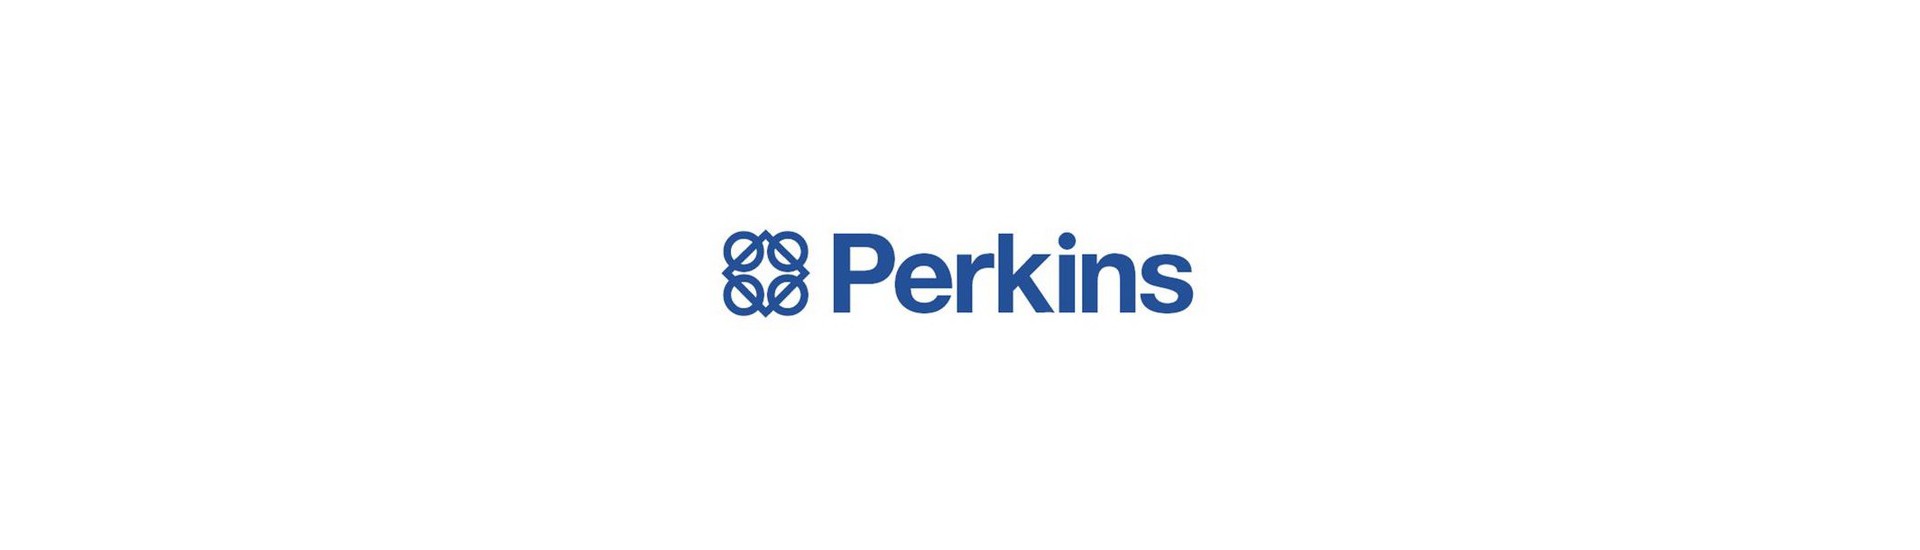 Filtri benzina Perkins au meilleur prix pour voiture sans permis